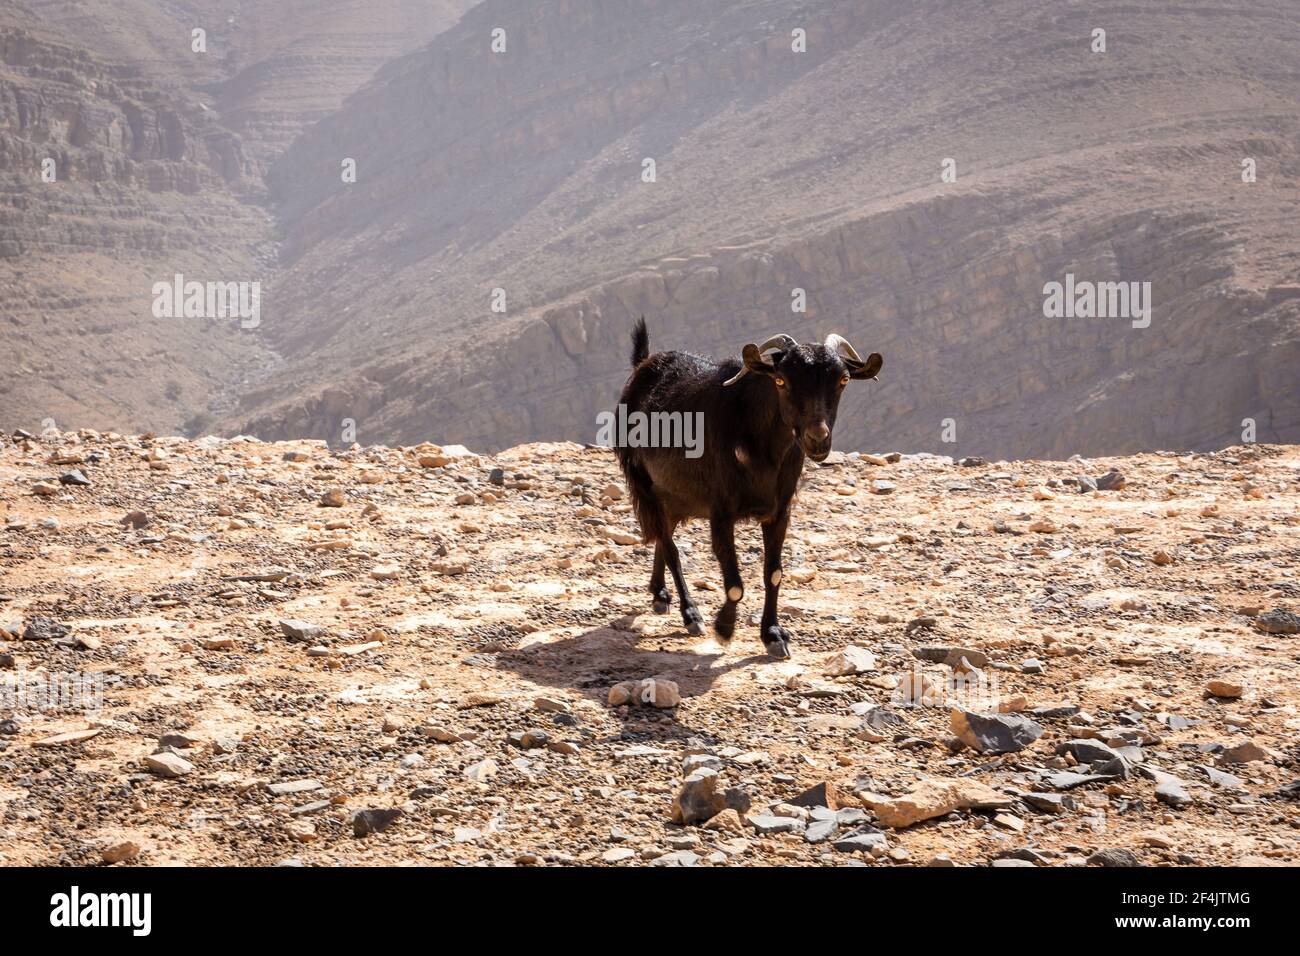 Capra nera (buck) con corna e occhi gialli, svegliandosi su un terreno sassoso con montagne rocciose e aride sullo sfondo nella catena montuosa Jebel Jais. Foto Stock